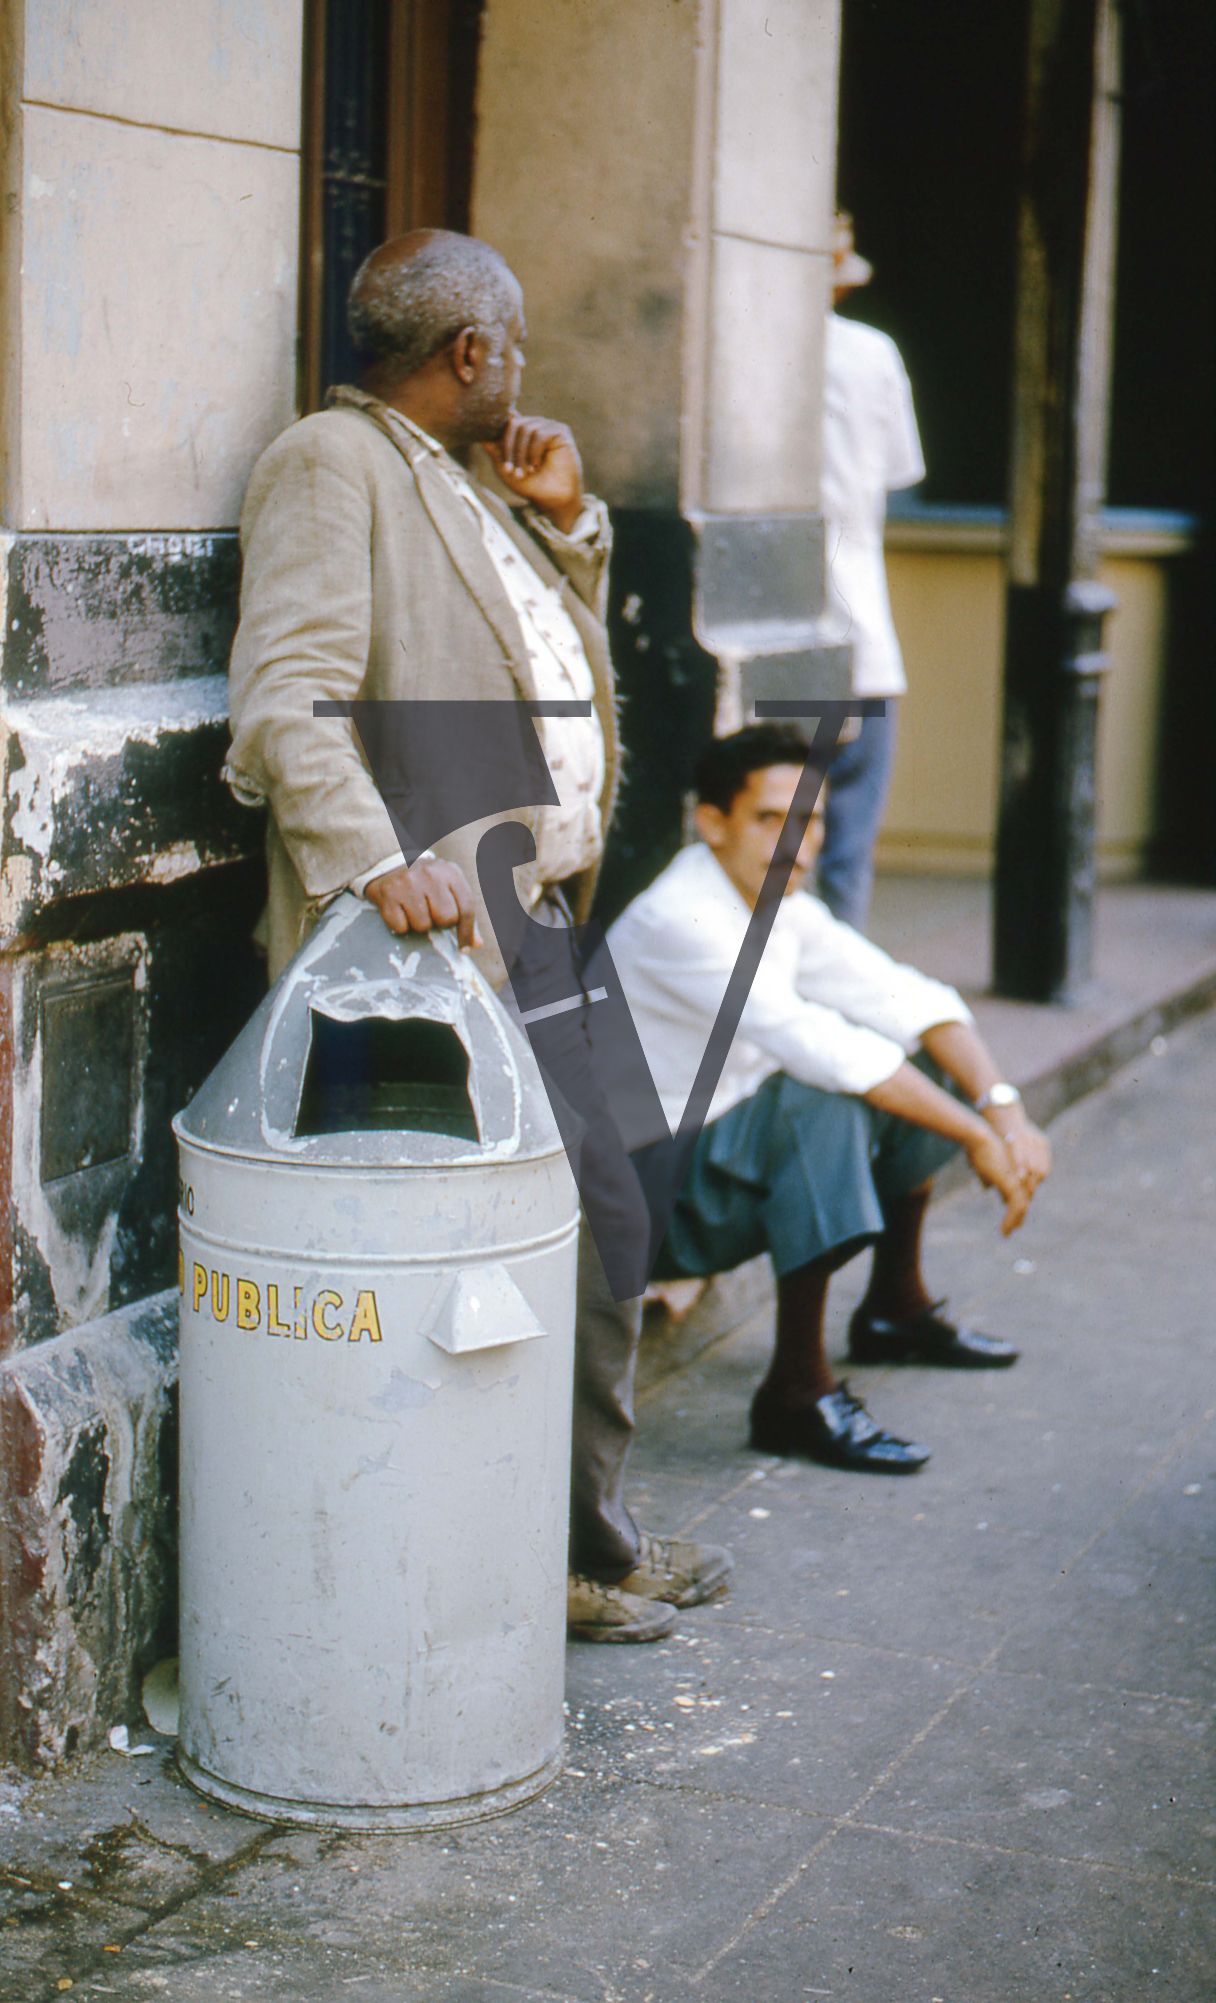 Cuba, Havana, May 1st, two men next to bin.